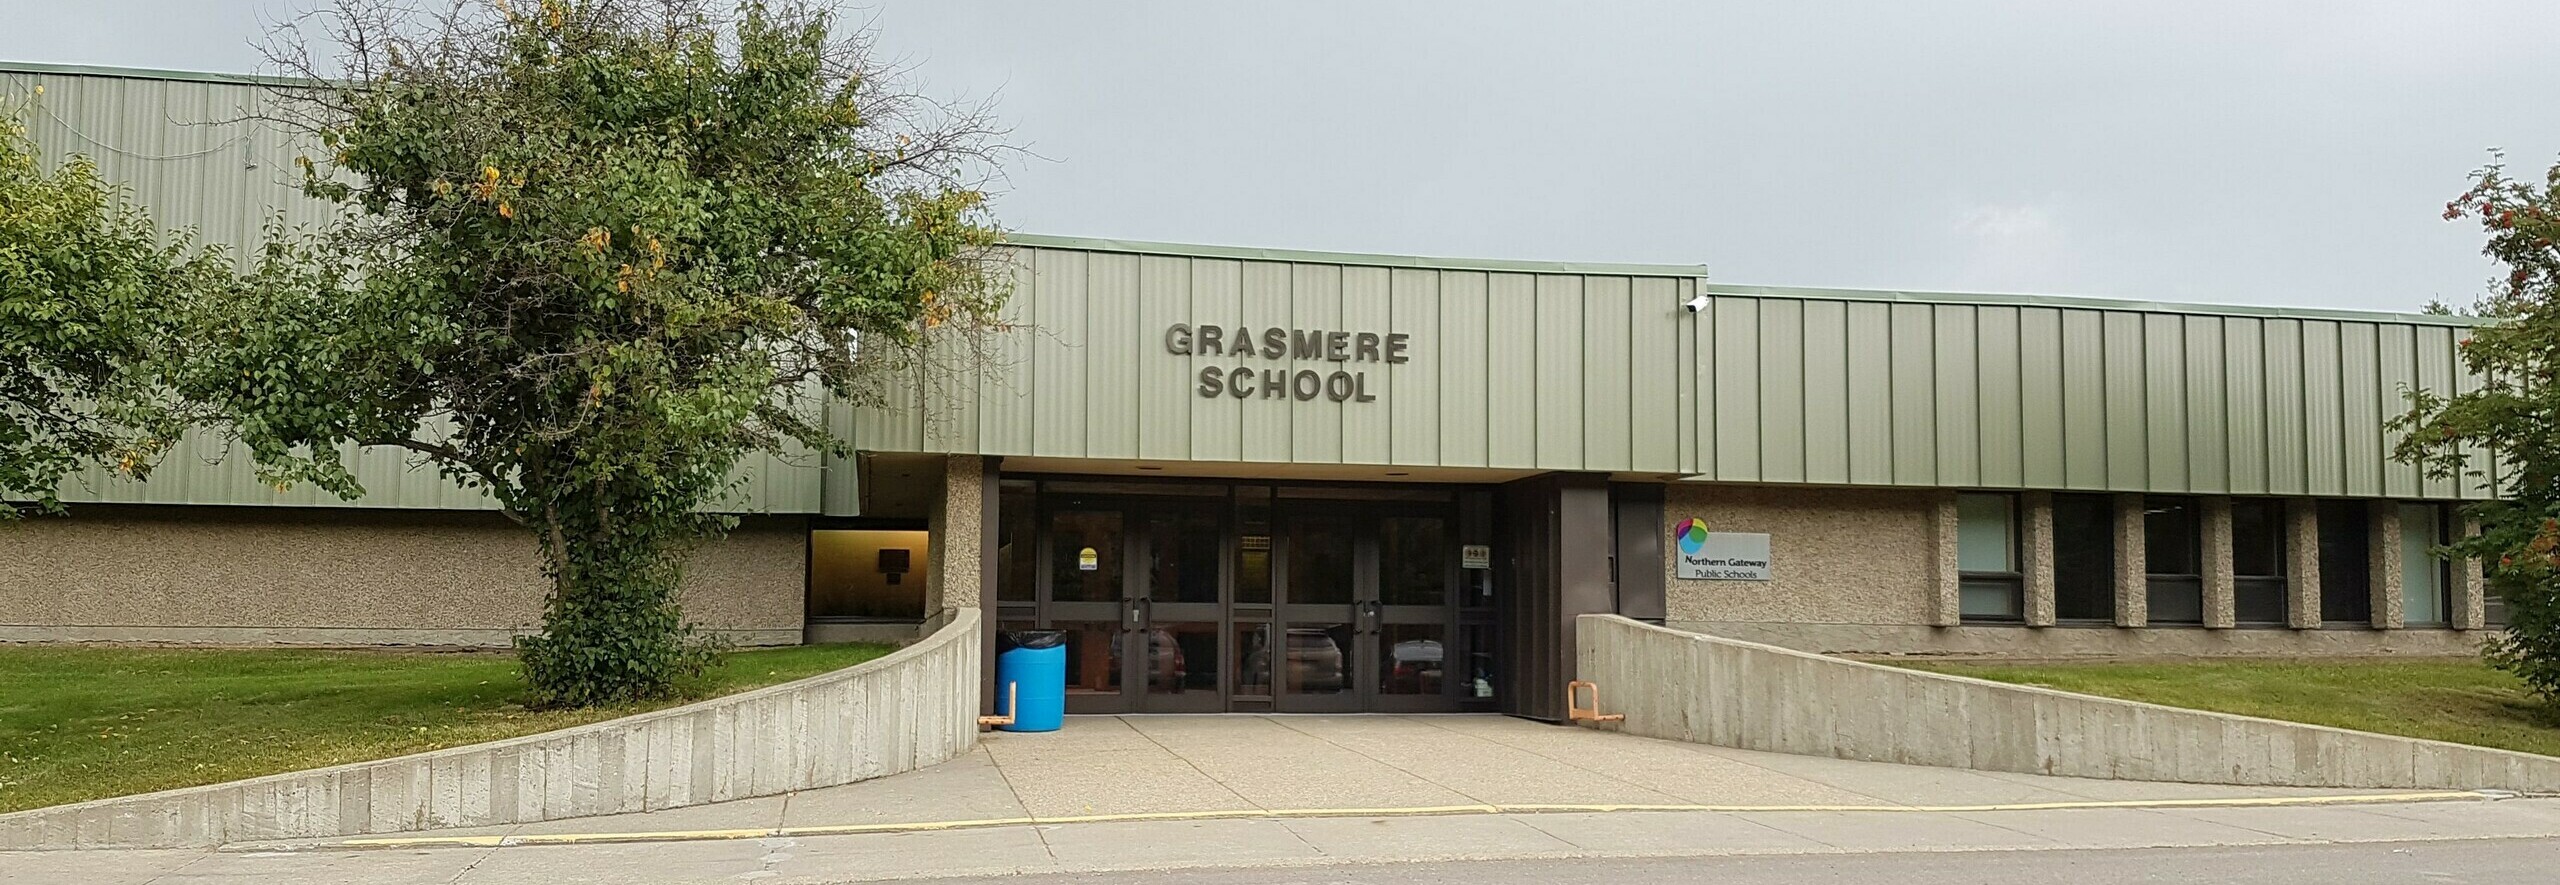 Grasmere School Banner Photo